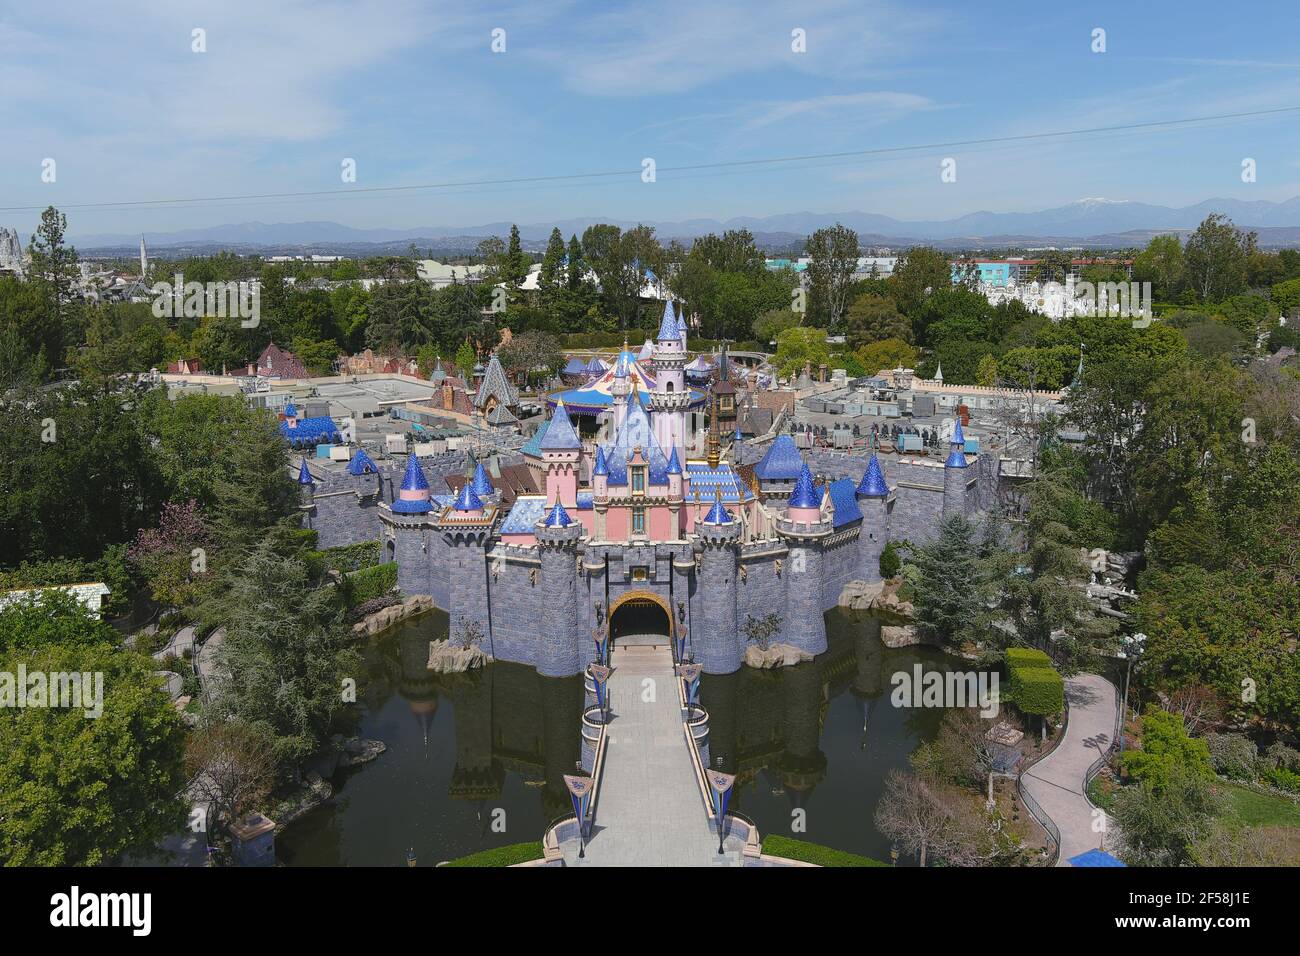 Une vue aérienne du Sleeping Beauty Castle à Disneyland Park, le mercredi 24 mars 2021, à Anaheim, Calif. Banque D'Images